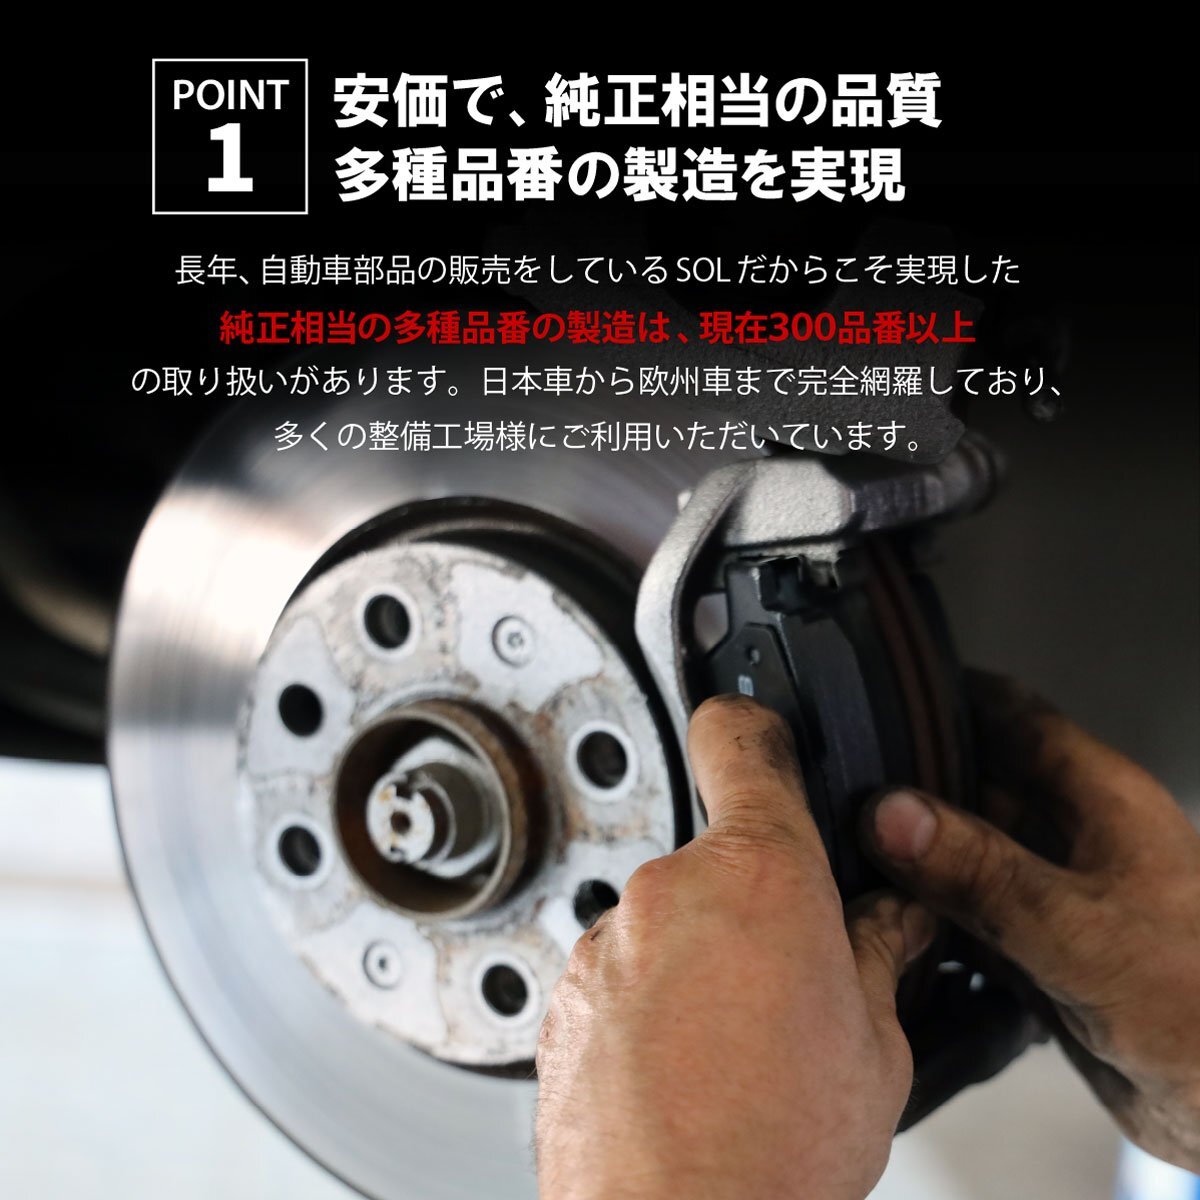  Daihatsu Hijet S201P S210P передние тормозные накладки левый и правый в комплекте отгрузка конечный срок 18 час марка машины особый дизайн 04465-B5021 04465-B5020 04465-B5050